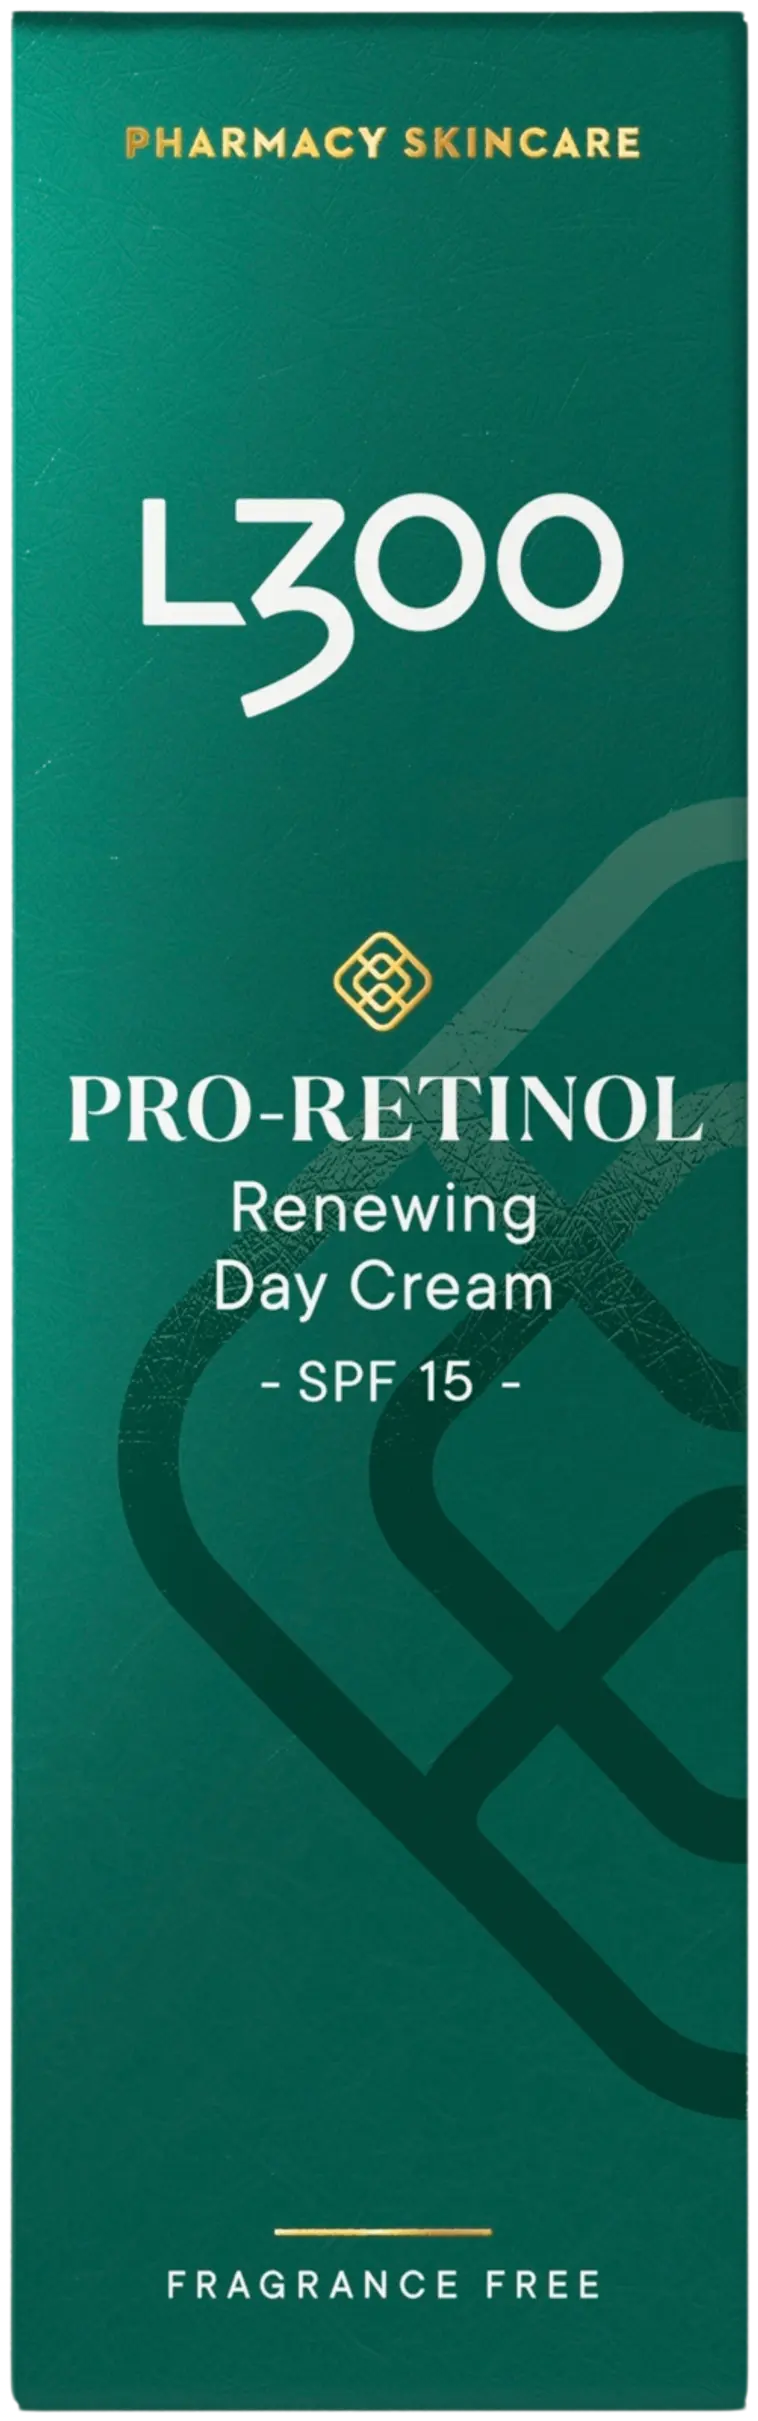 L300 Pro-Retinol Renewing Day Cream SPF15 fragrance free hajusteeton kosteuttava päivävoide 50ml